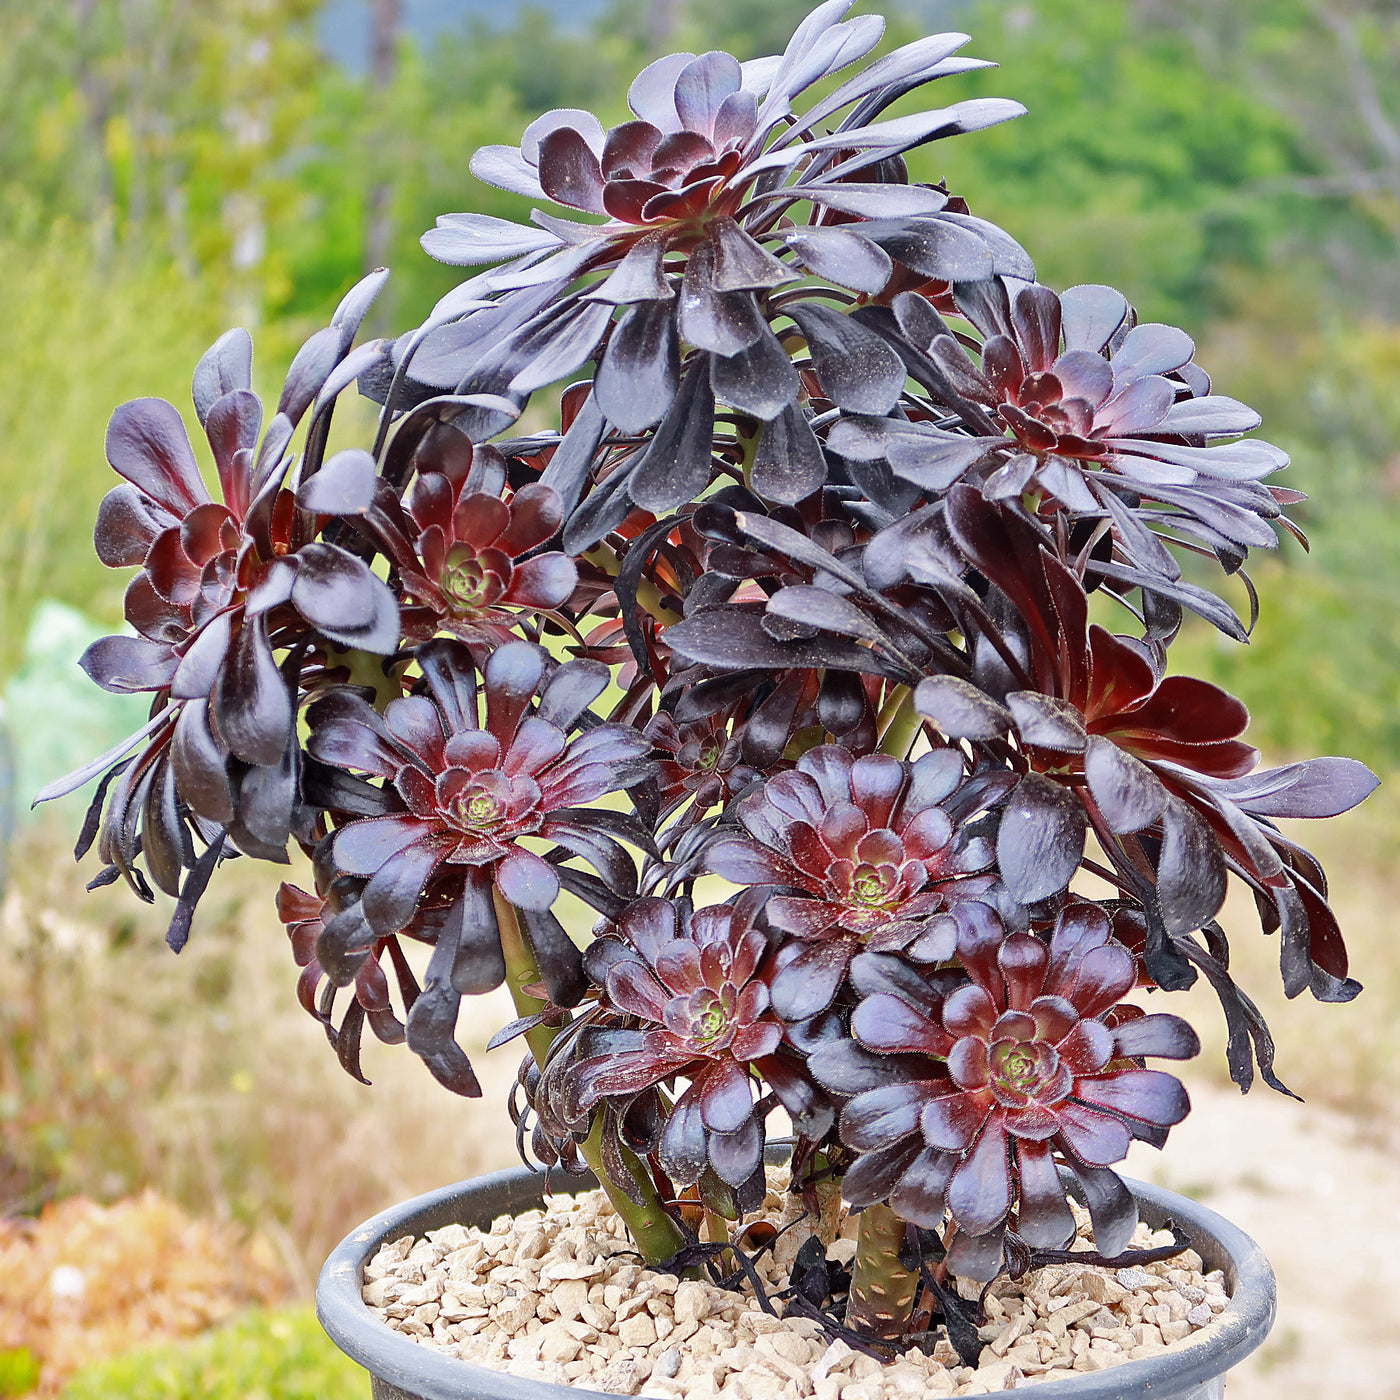 Black Rose - Aeonium arboreum zwartkop